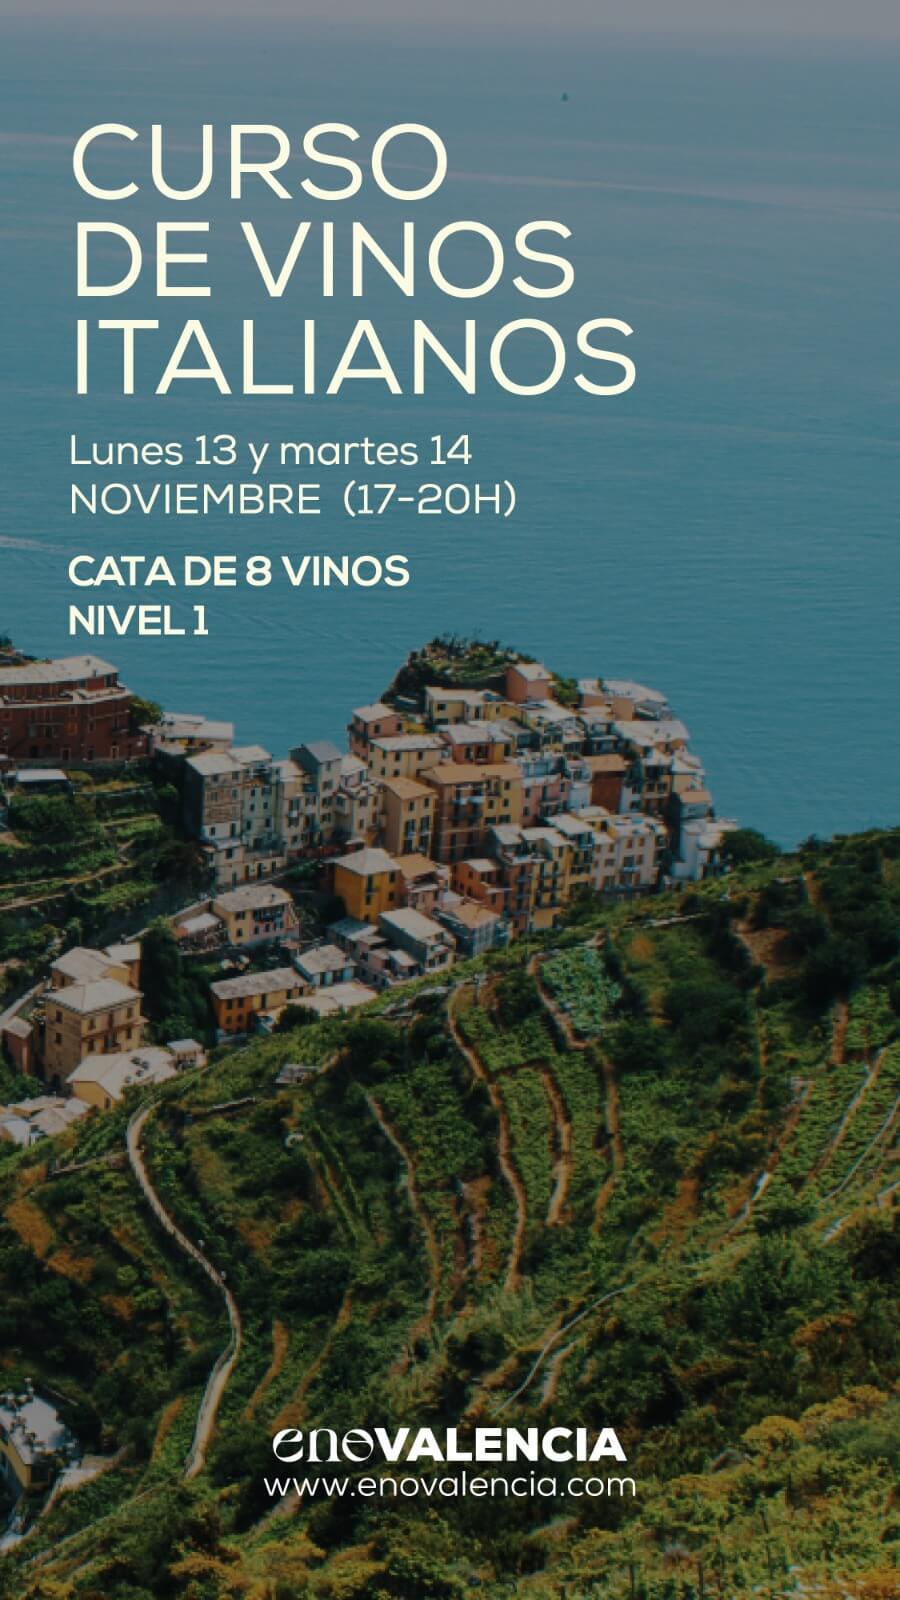 Eventos Curso Vinos Italianos (Nivel 1) EnoValencia - Cata, eventos y venta de vino 9